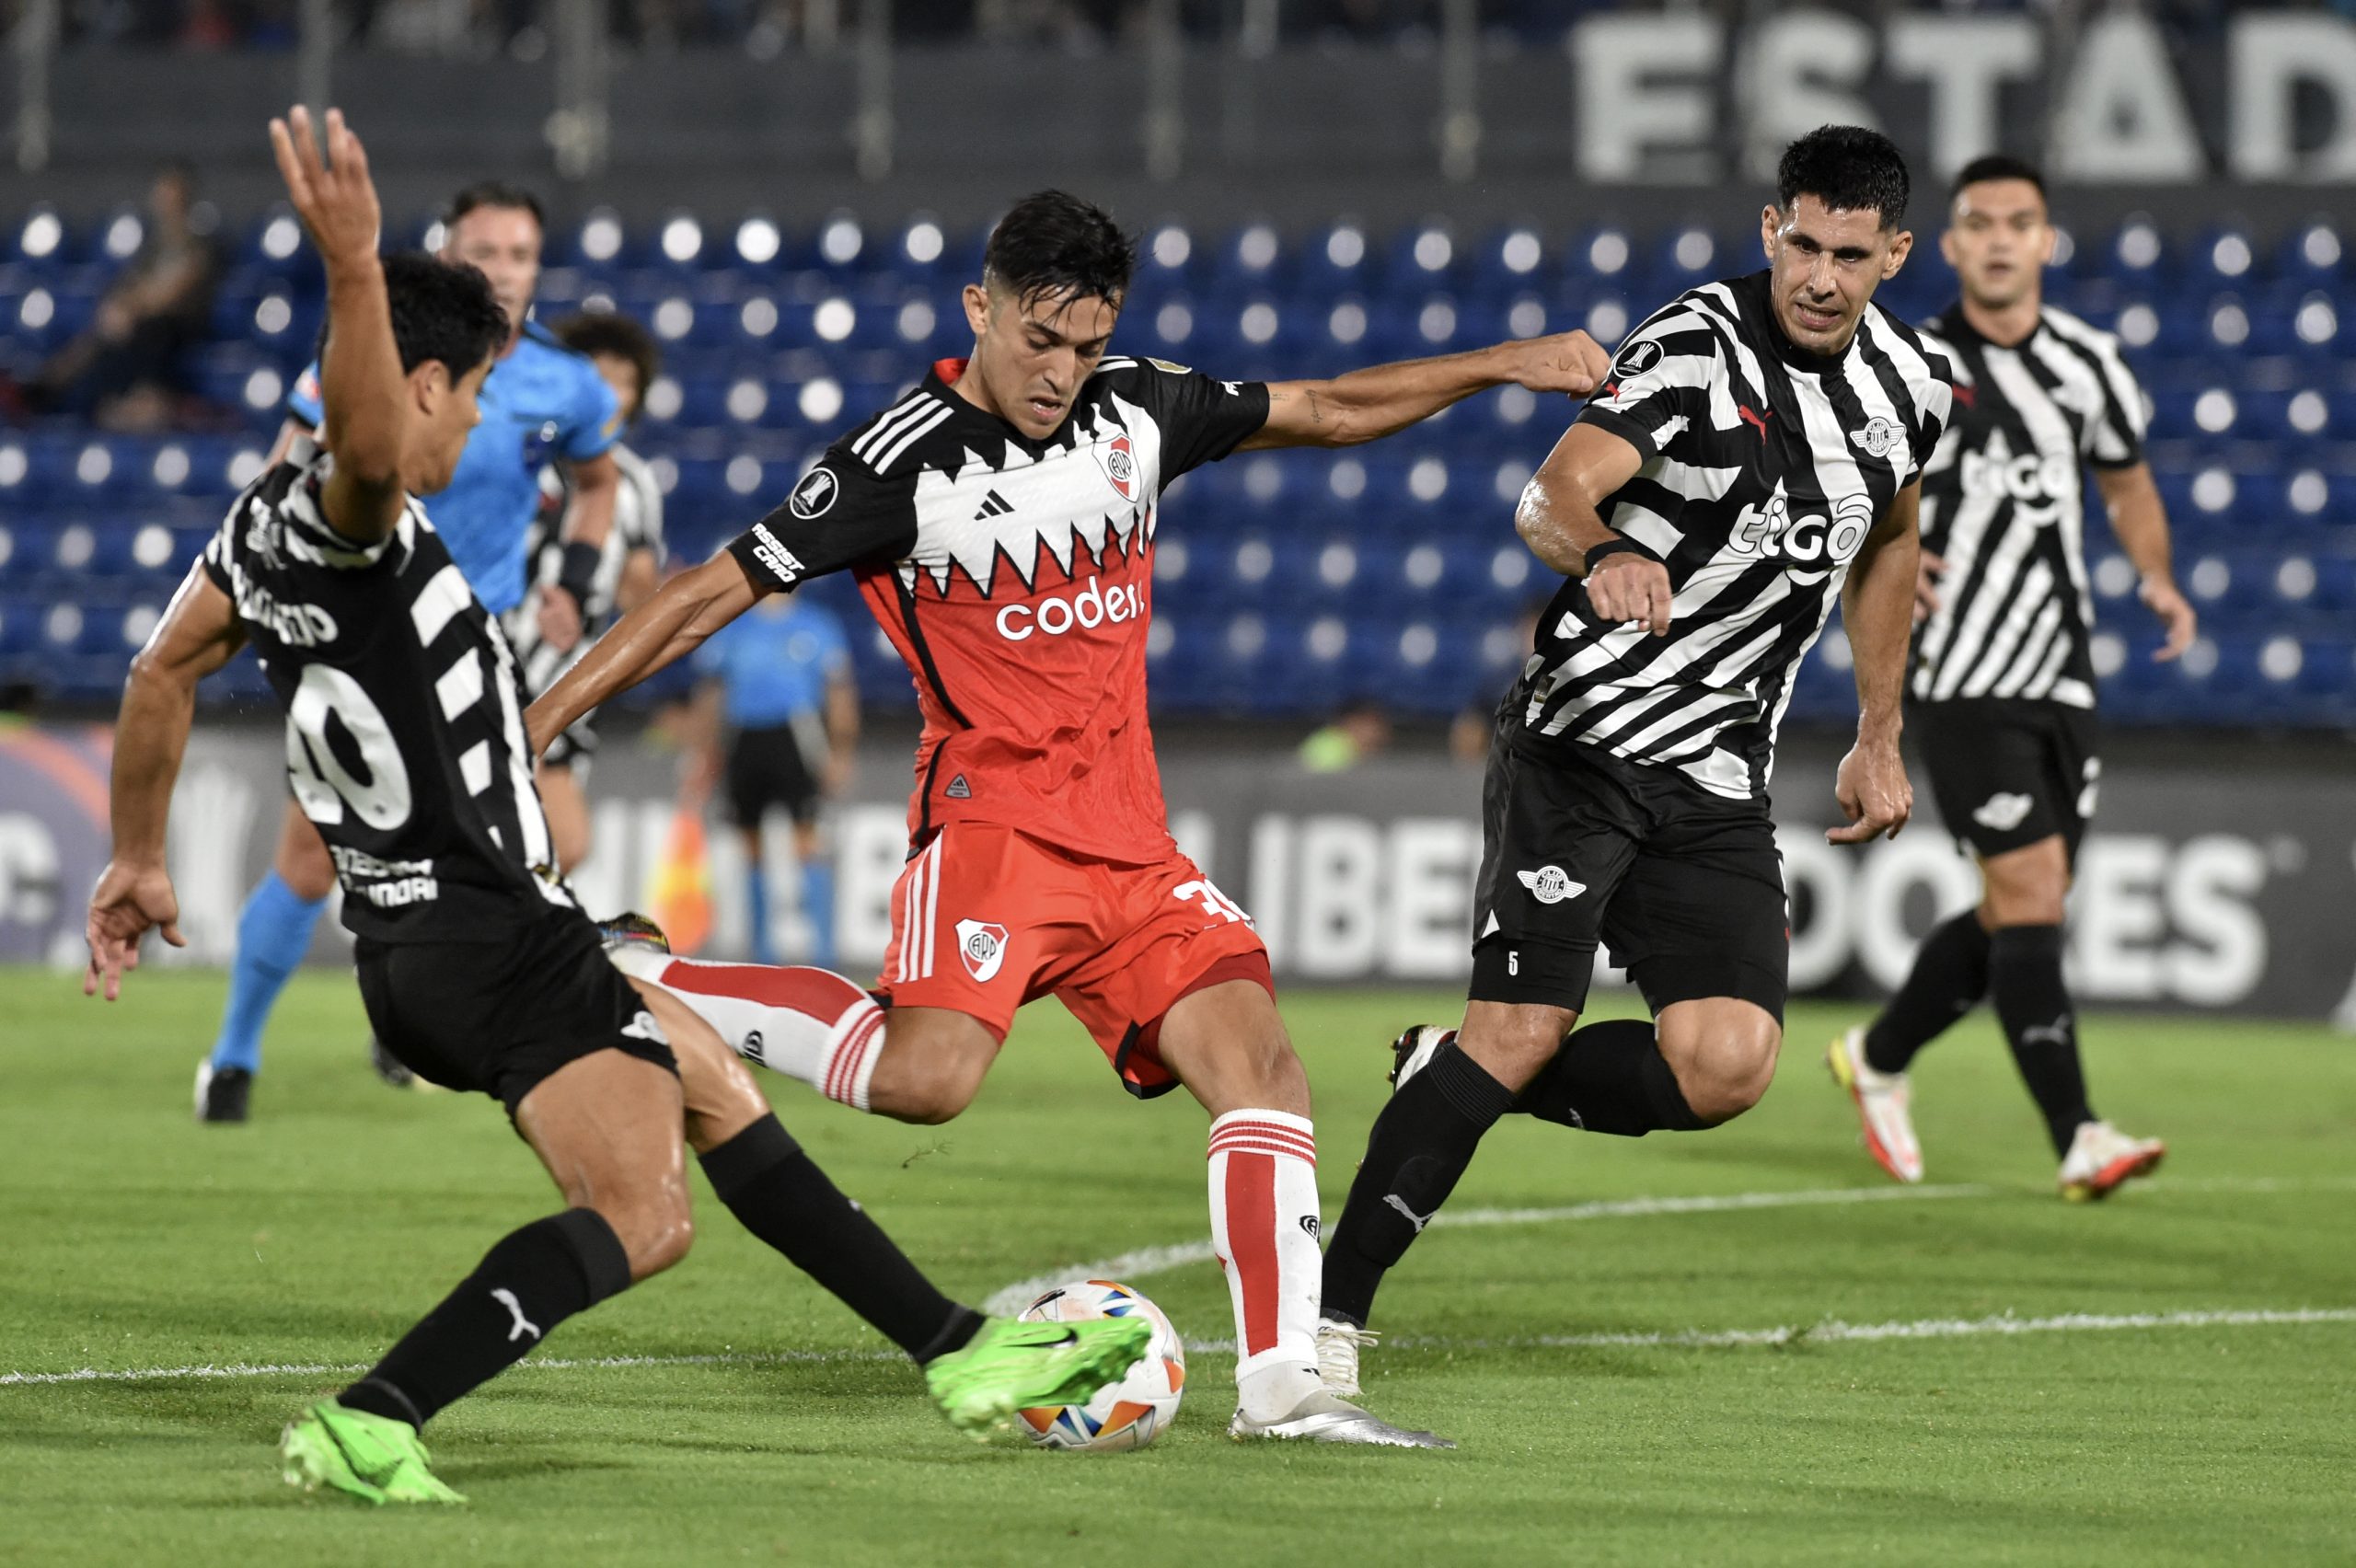 Grupo H: Nacional venció con dificultades ante Dep. Táchira, River ganó por 2-1 a Libertad en Paraguay